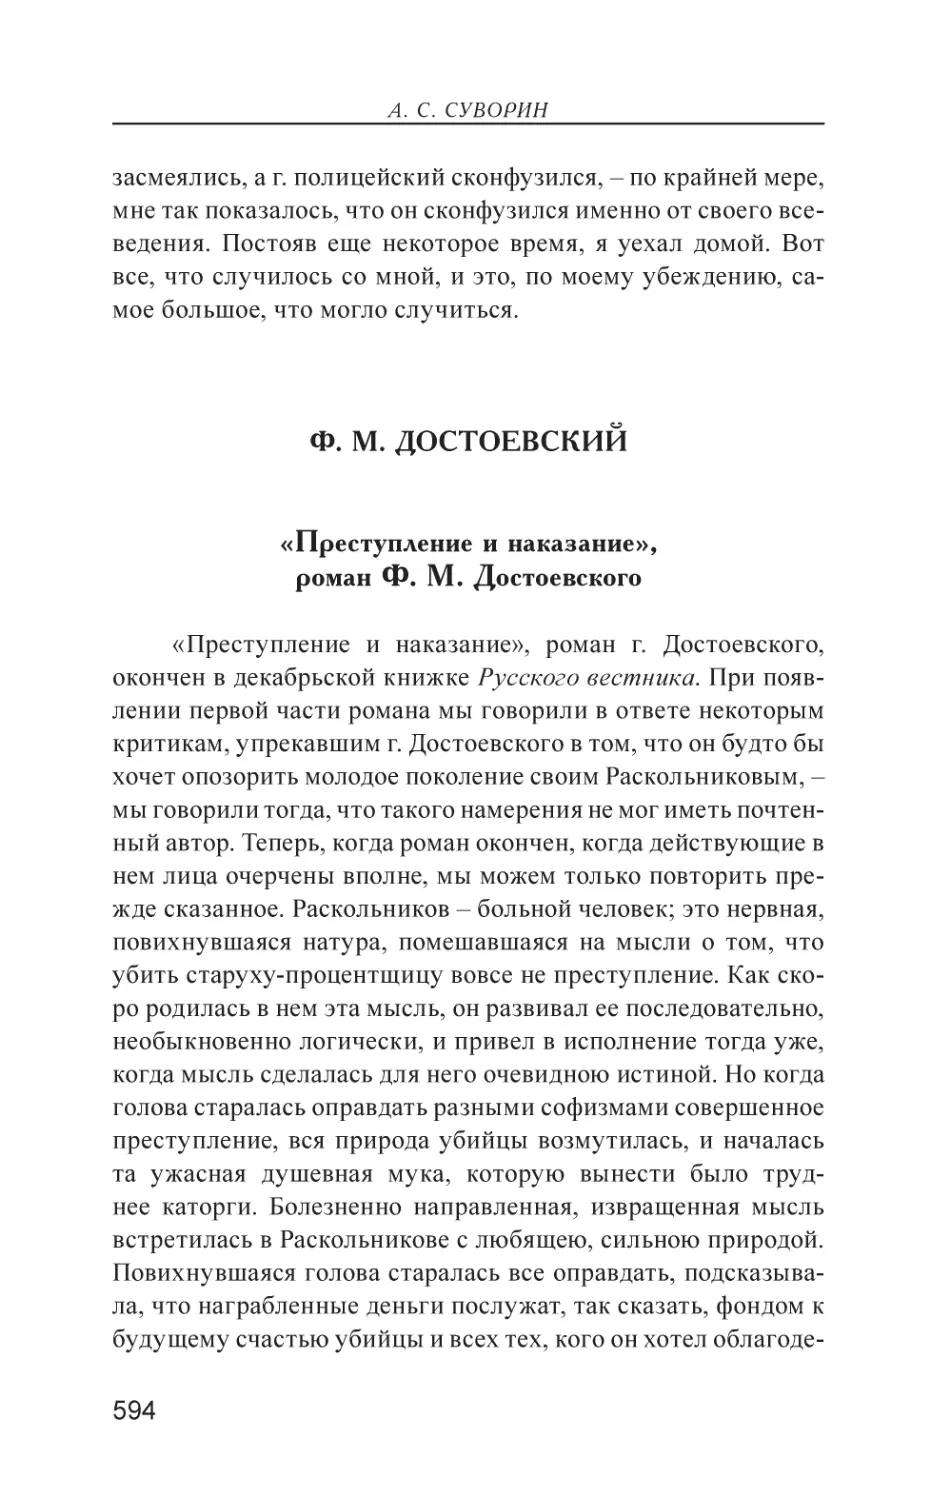 Ф. М. Достоевский
«Преступление и наказание», роман Ф. М. Достоевского